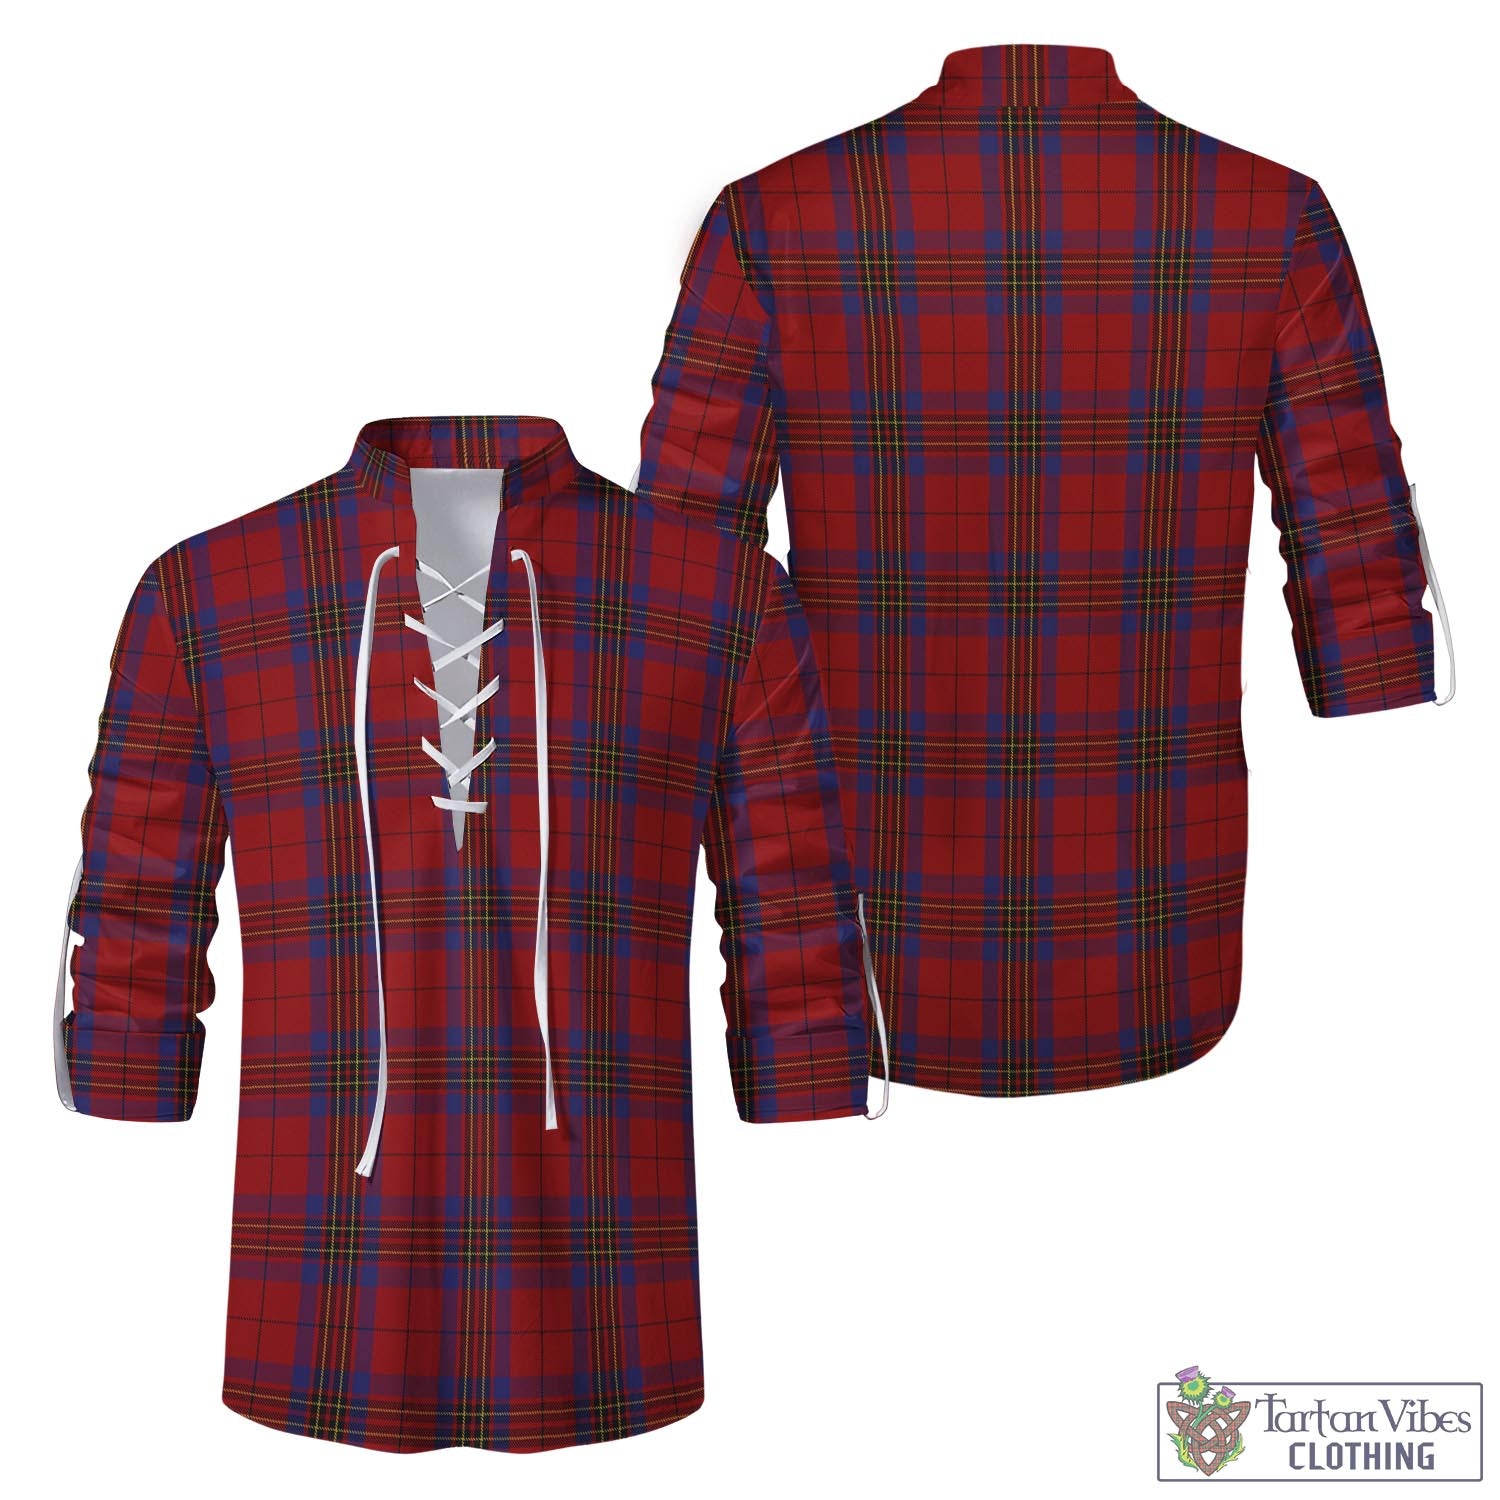 Tartan Vibes Clothing Leslie Red Tartan Men's Scottish Traditional Jacobite Ghillie Kilt Shirt